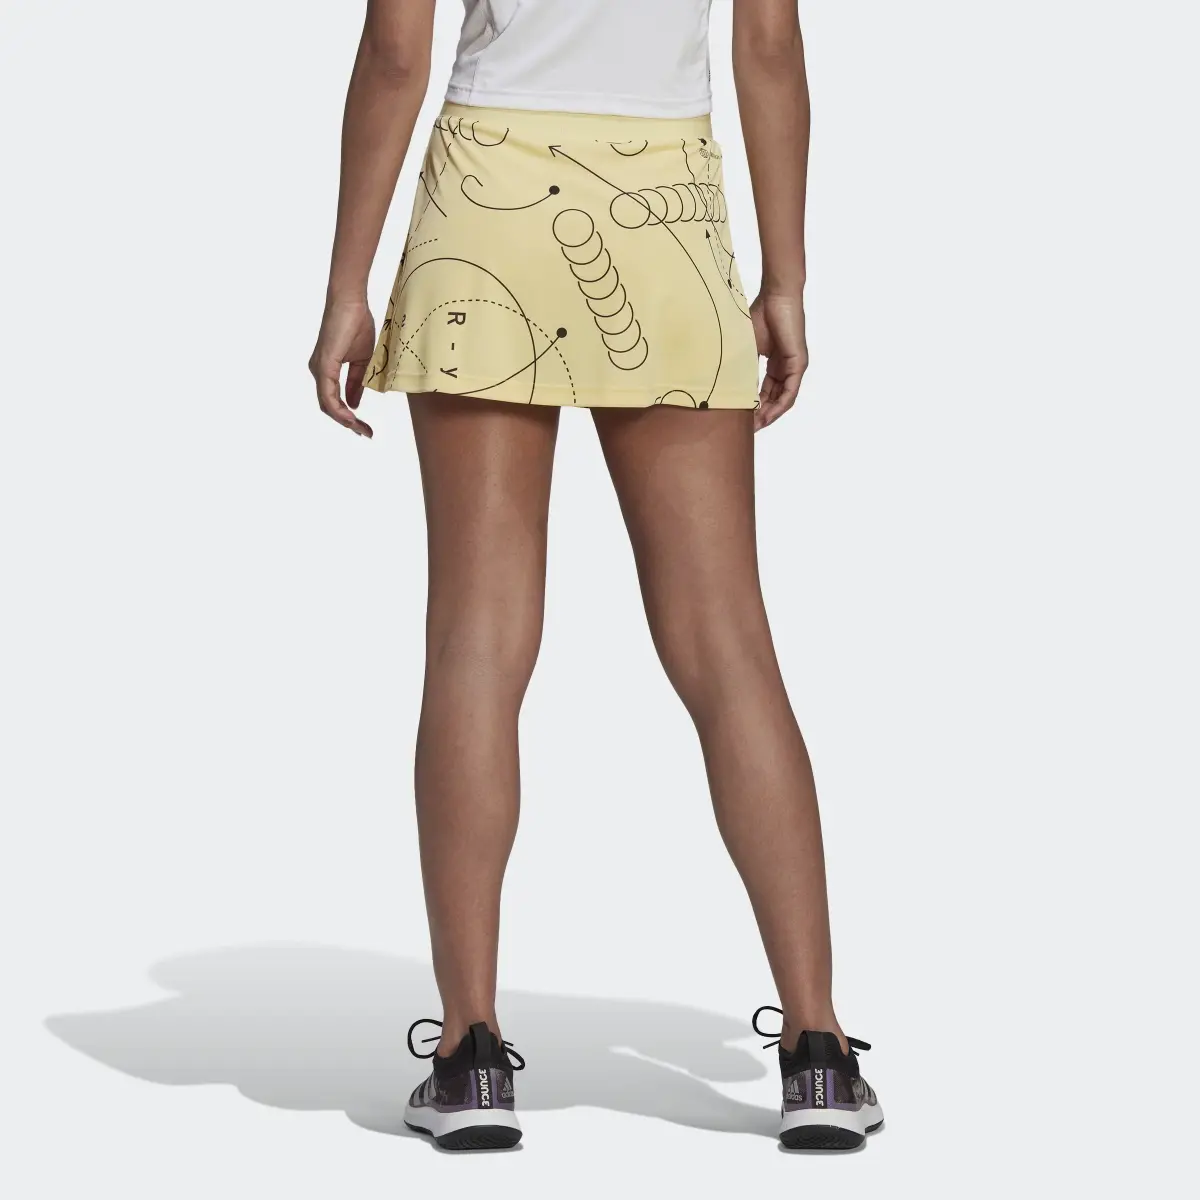 Adidas Club Tennis Graphic Skirt. 2